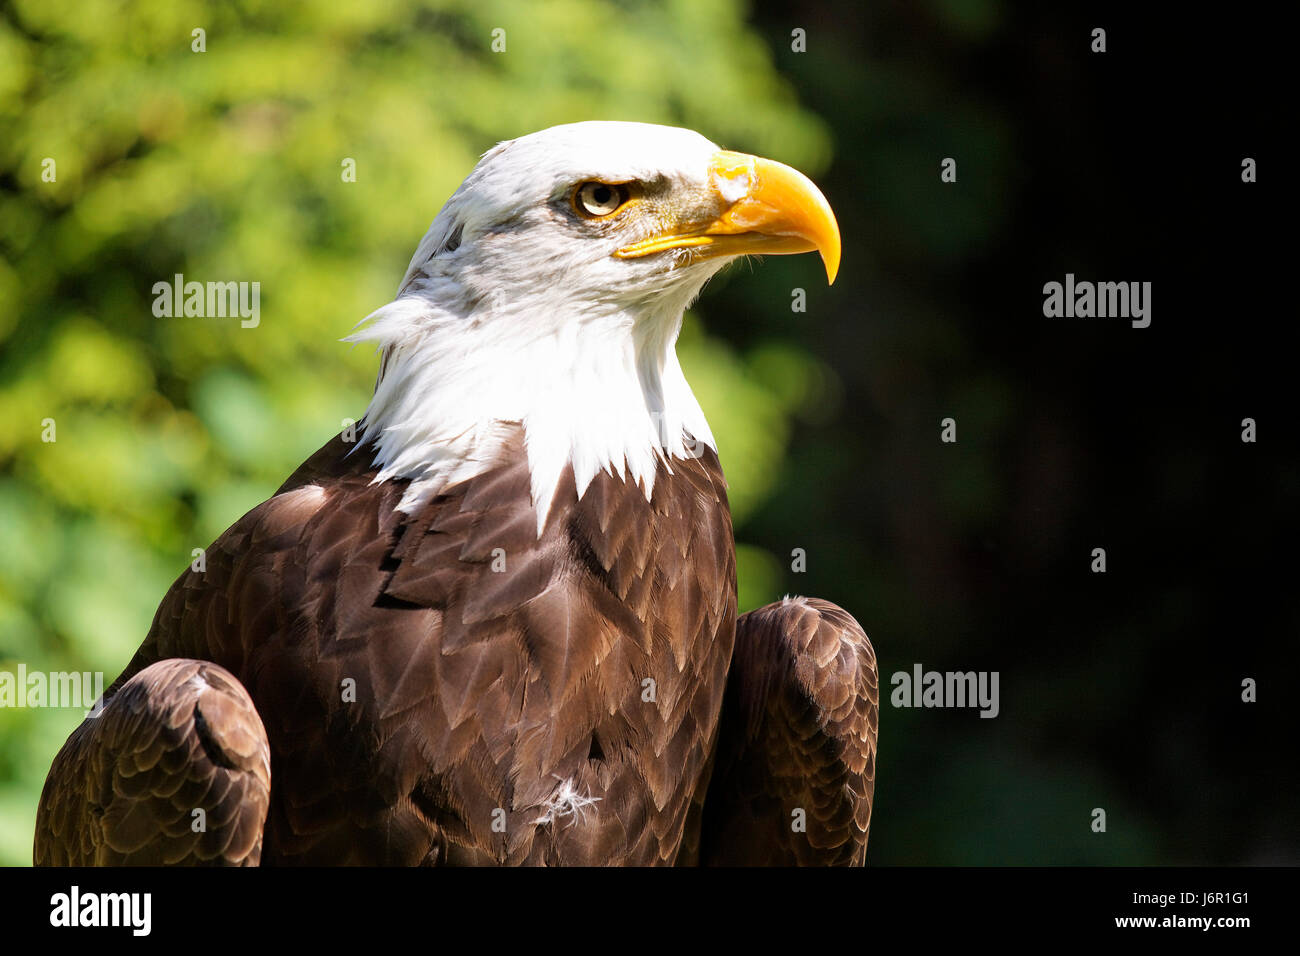 Animaux oiseaux rapaces oiseaux plumes d'oiseaux de proie oiseaux animal eagle eye portrait Banque D'Images